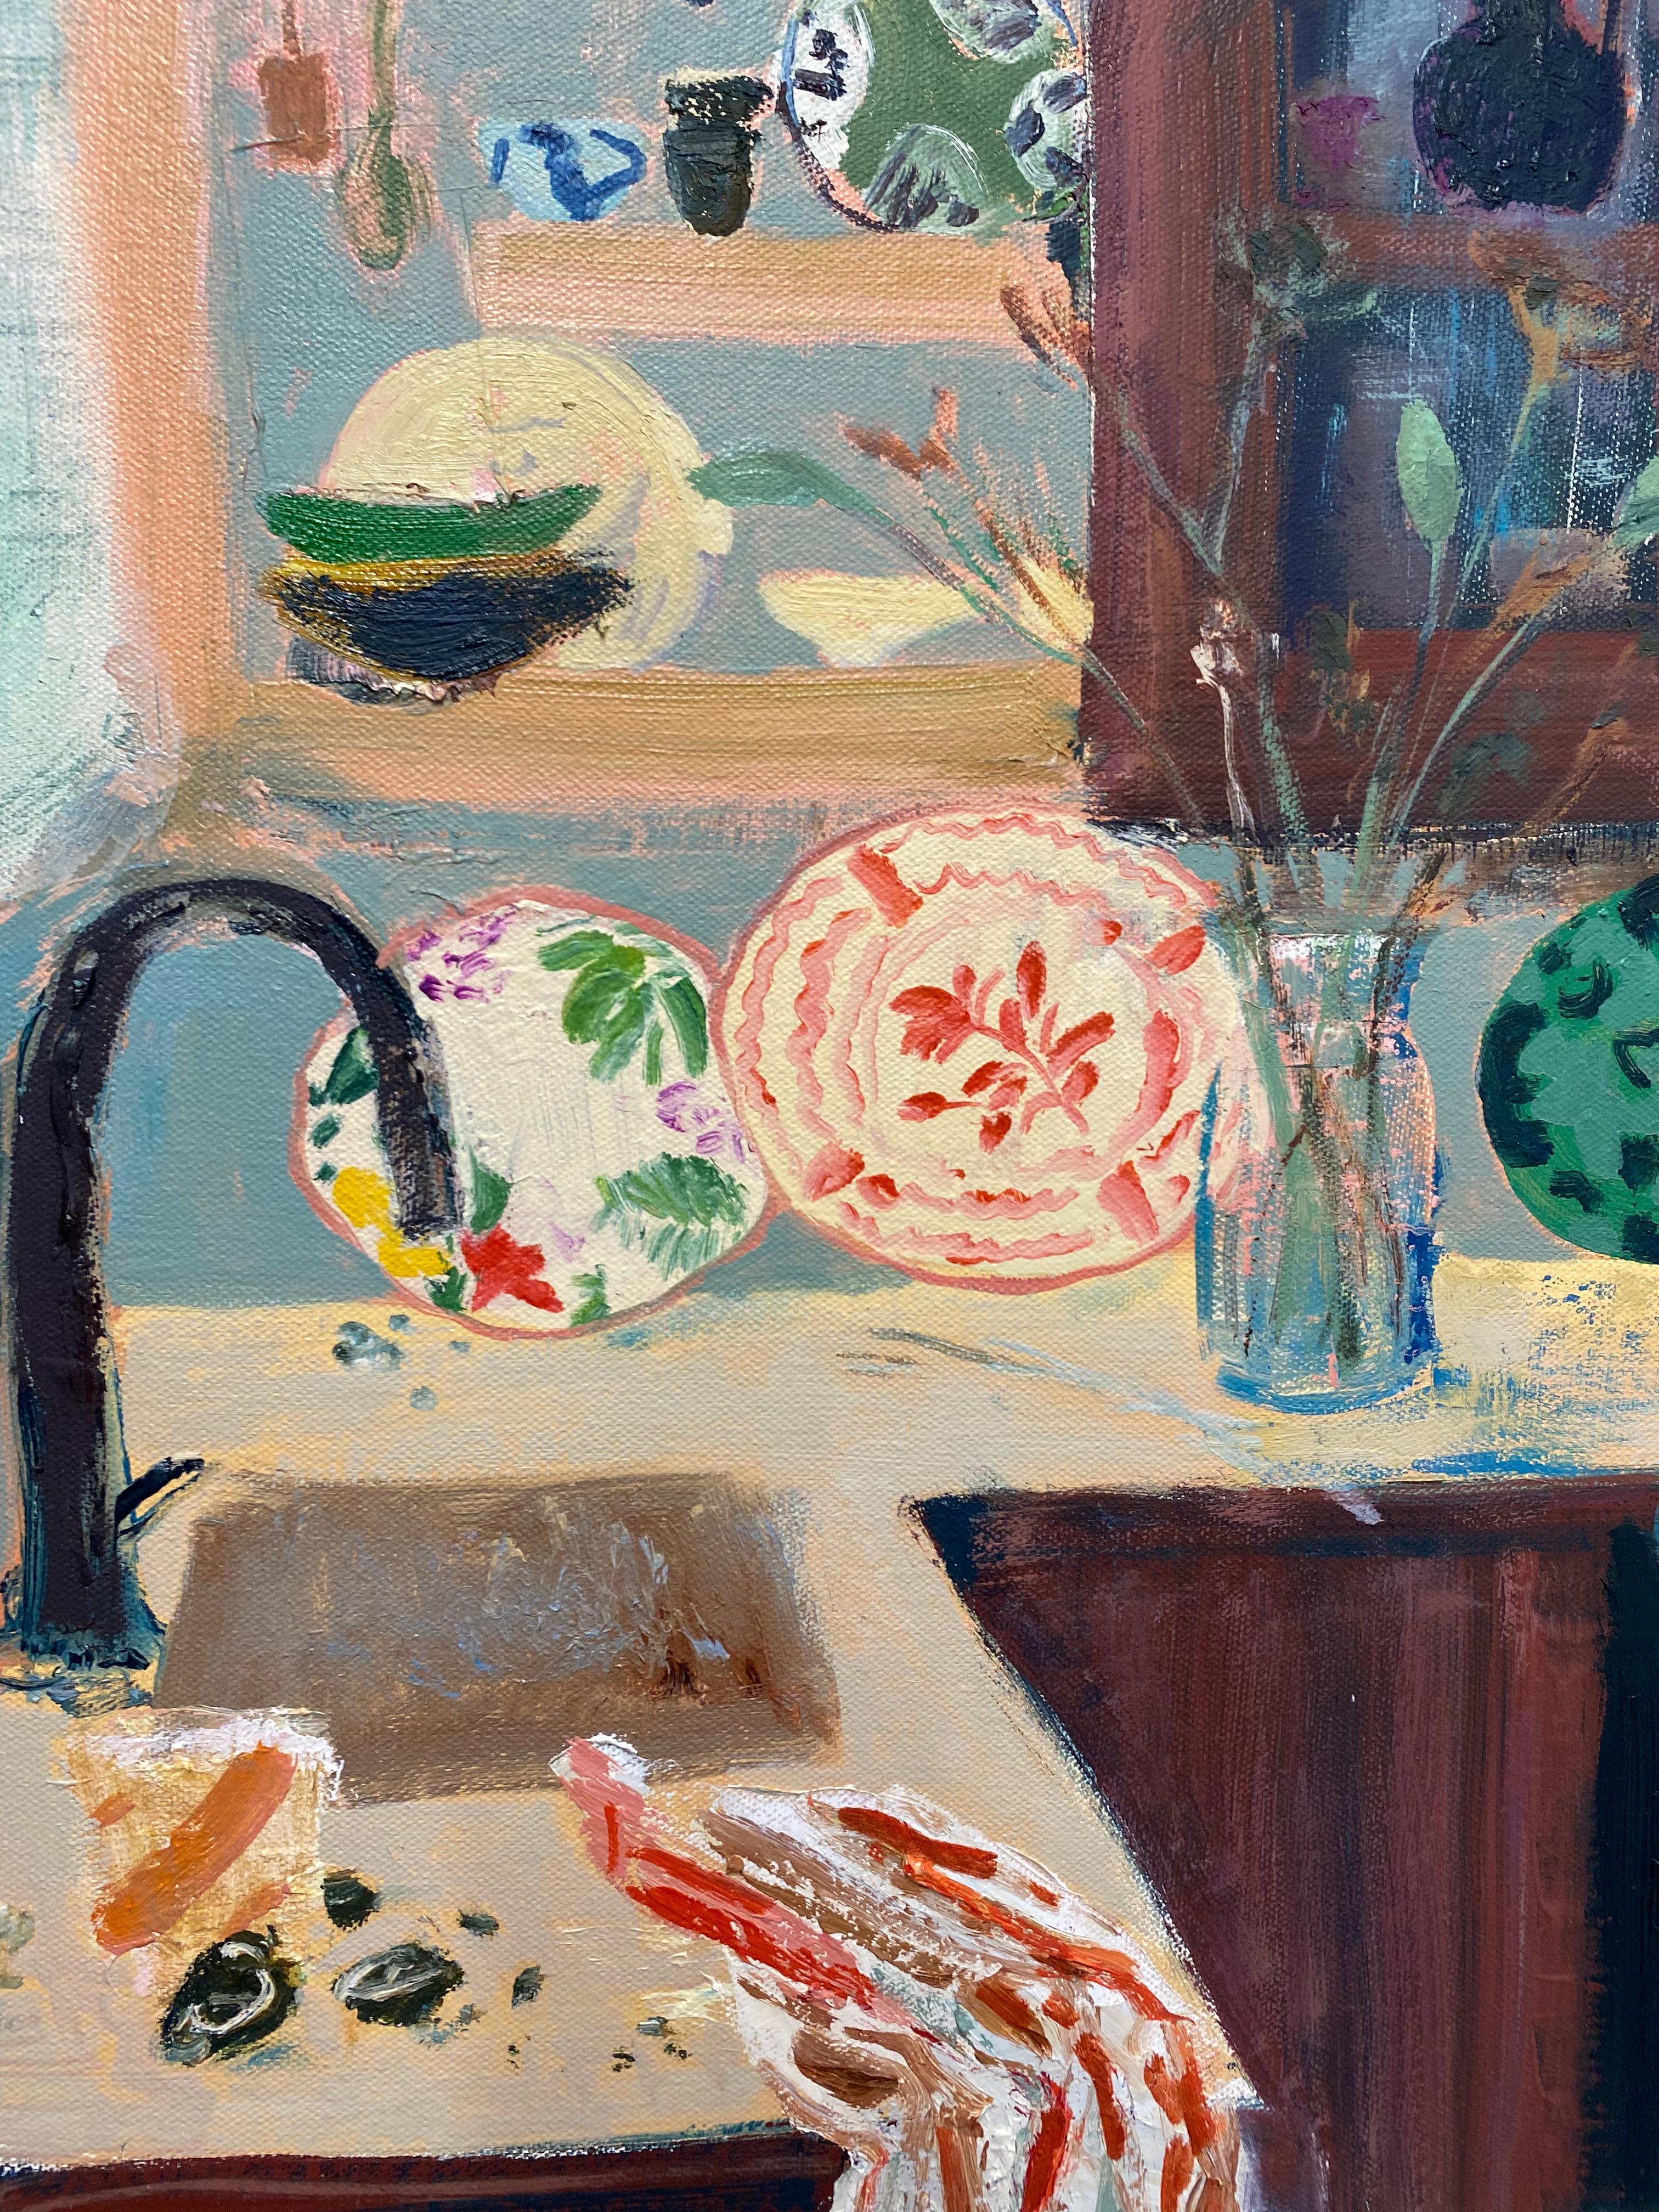 Scène d'intérieur lumineuse et accueillante avec des assiettes en porcelaine à motifs colorés posées à côté d'une composition florale avec des fleurs vertes dans un vase sur le comptoir de la cuisine et une théière rouge cramoisi. Des tasses à thé